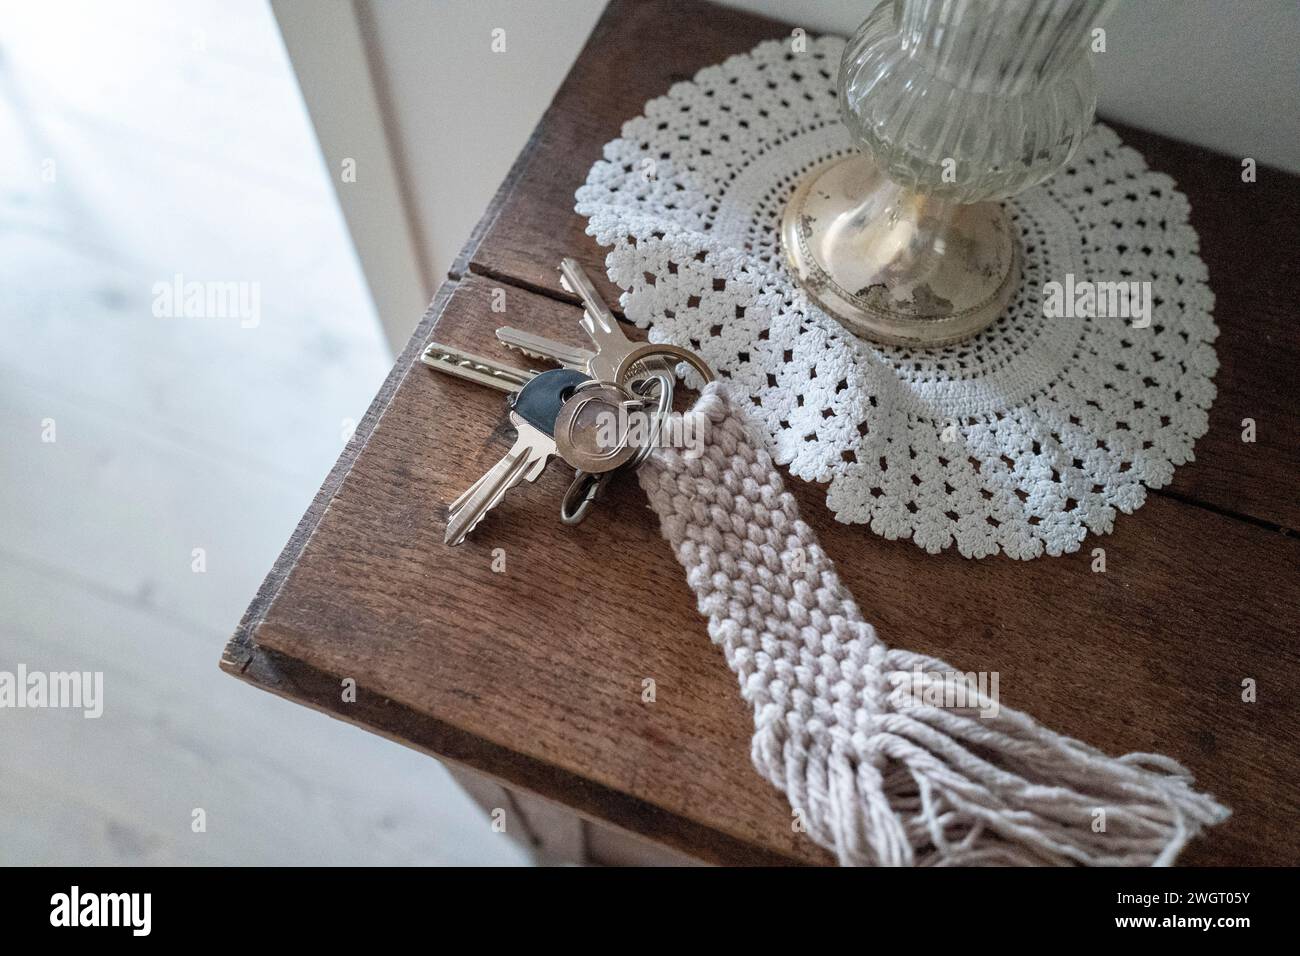 Nederland: Een sleutelbos ligt op een klein tafeltje in de hal. foto: Patricia Rehe / Hollandse Hoogte Stockfoto